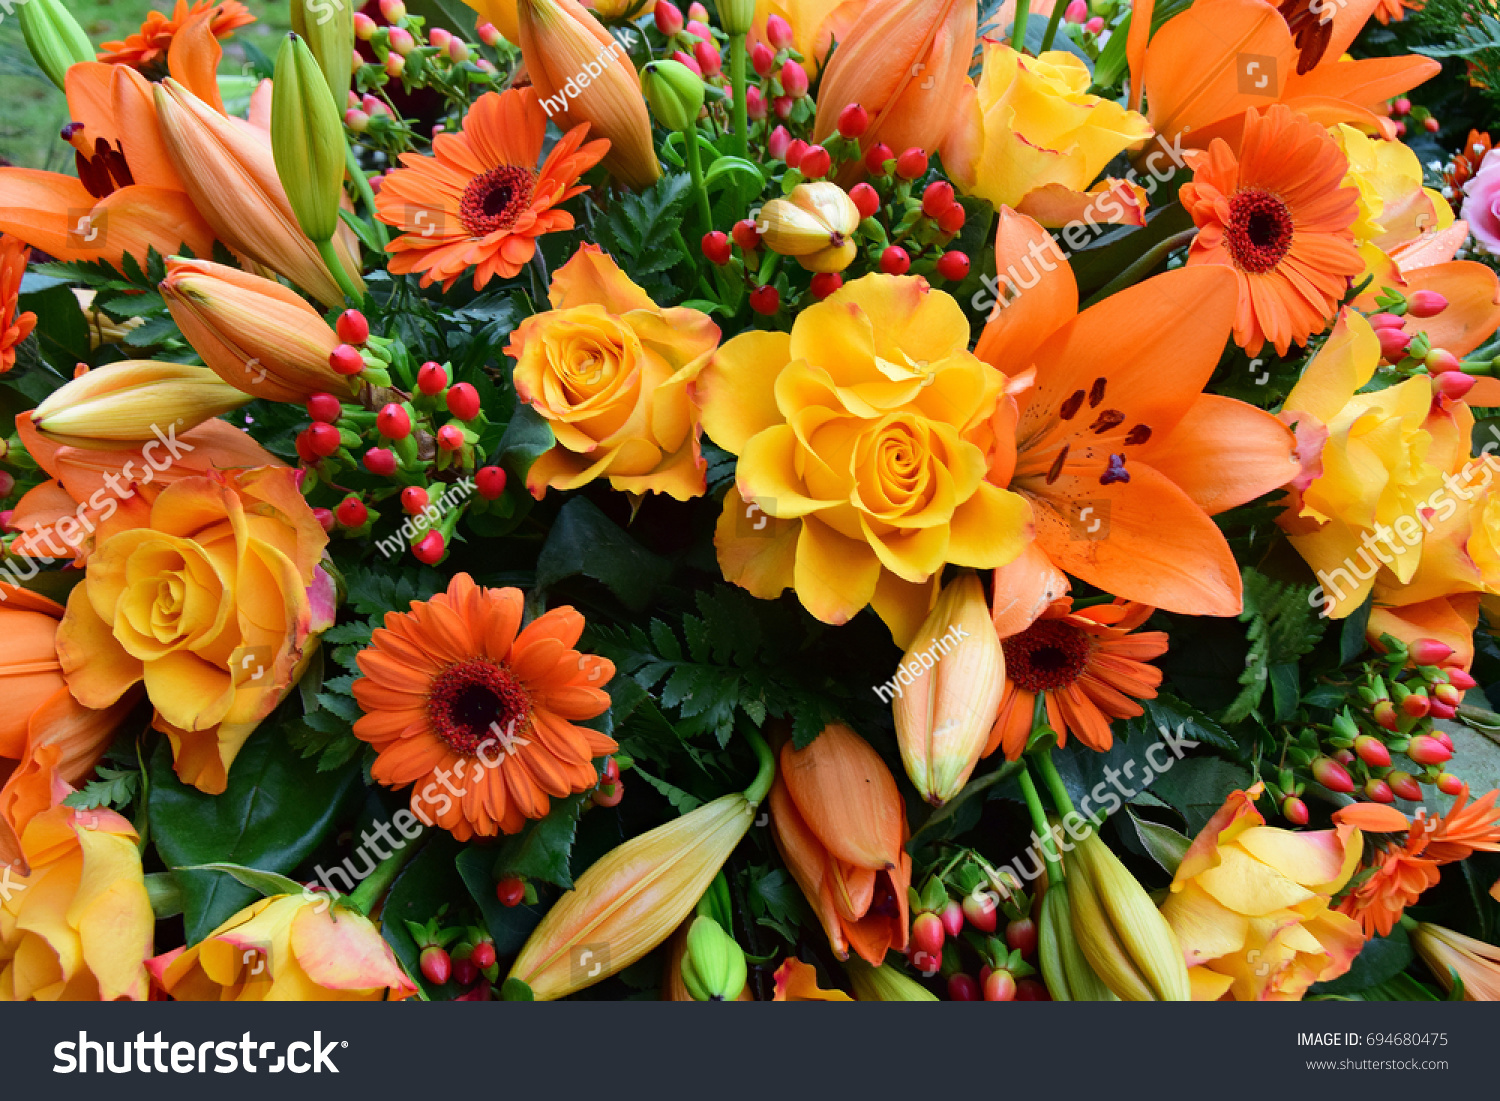 2,623 Grave flower arrangement Images, Stock Photos & Vectors ...